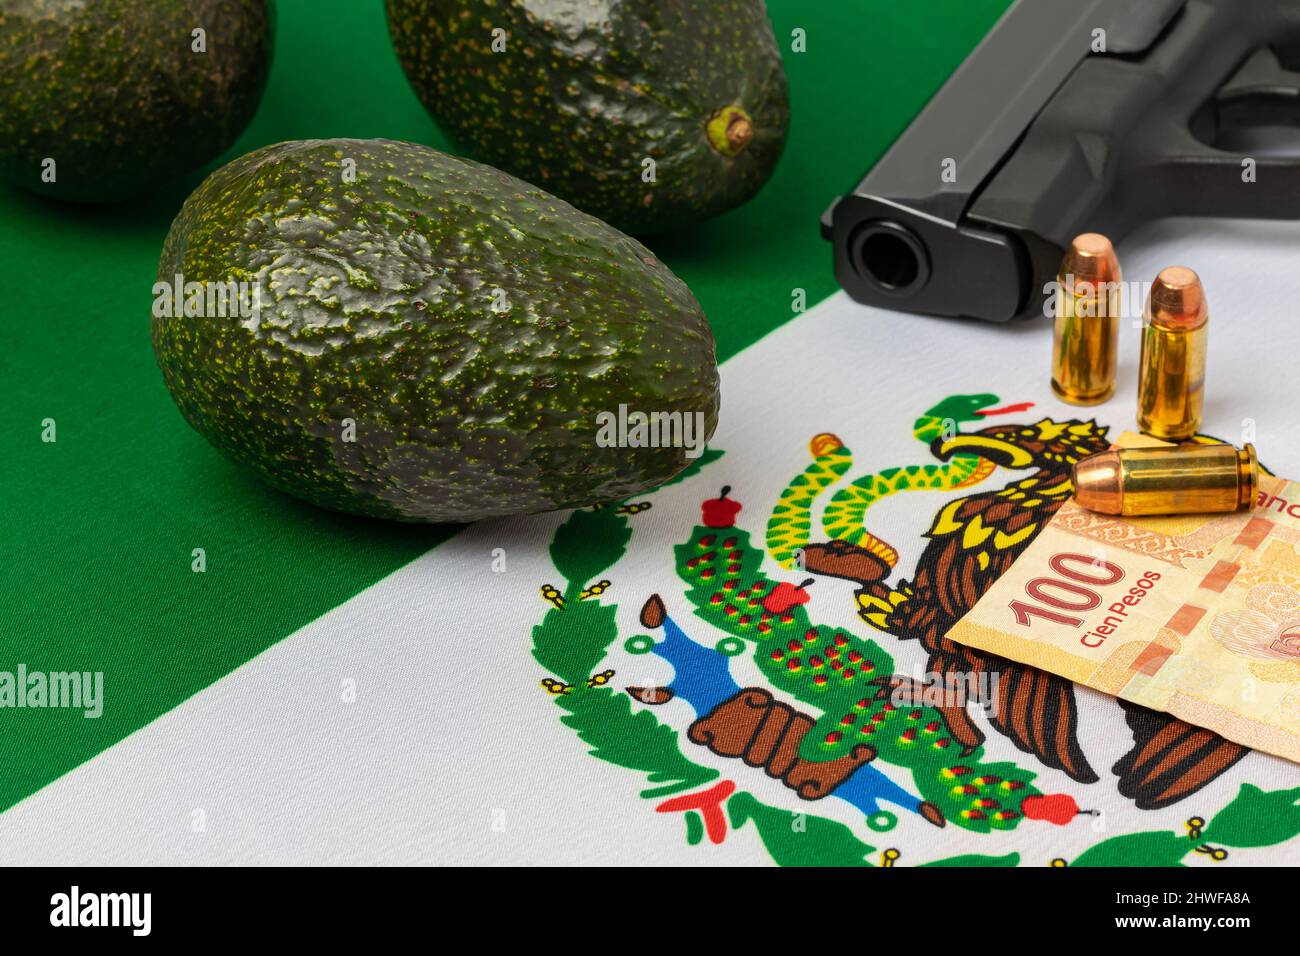 Avocats, drapeau mexicain et arme à feu. Extorsion, violence et crime commis par des cartels de la drogue au Mexique dans l'élevage des avocats. Banque D'Images